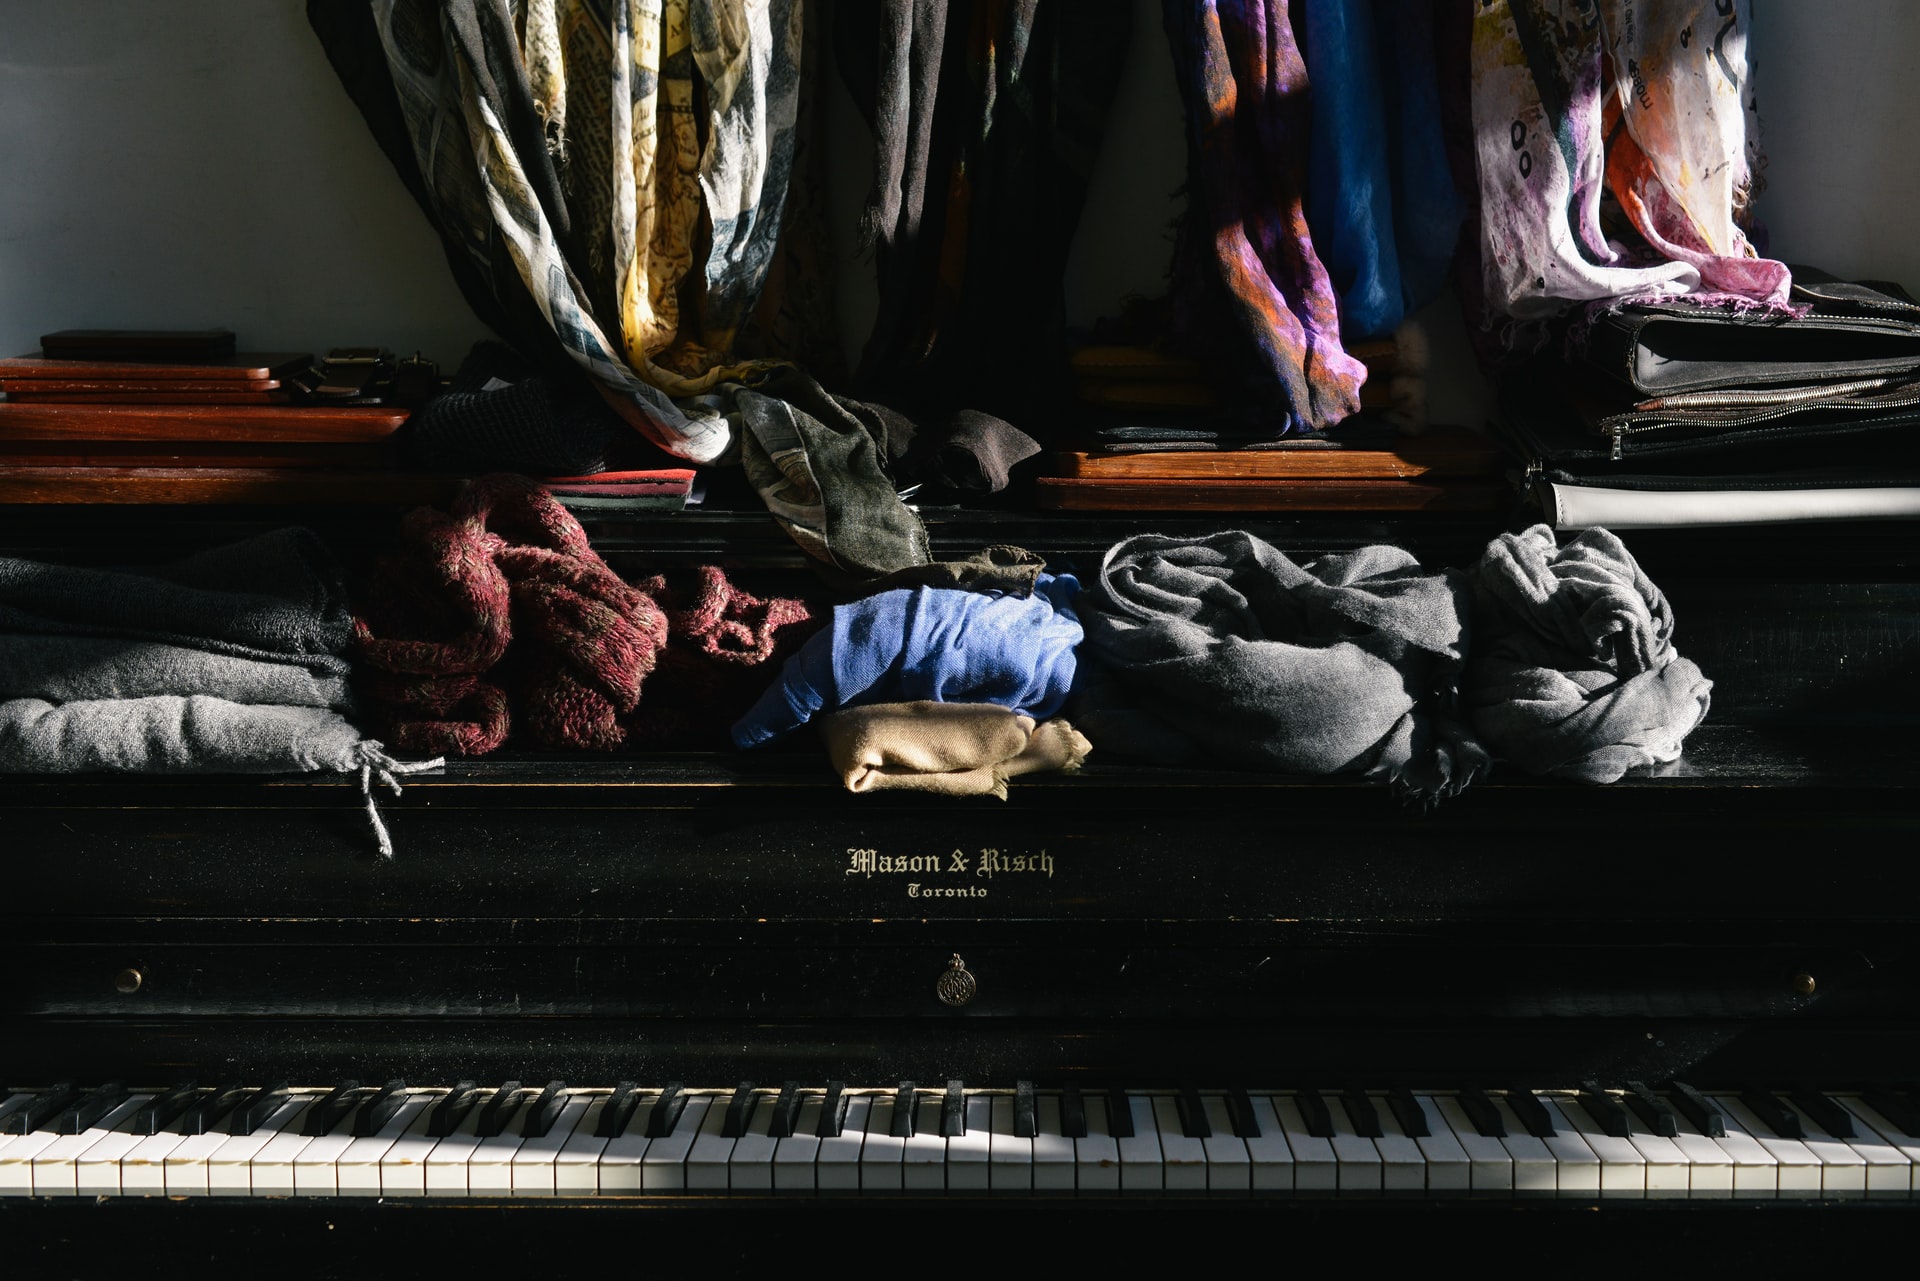 La acumulación de ropa afuera del armario se vuelve costumbre que causa desorden en la habitación y evita que la ropa se ventile. (Foto Prensa Libre: Celia Spenard-Ko on Unsplash).